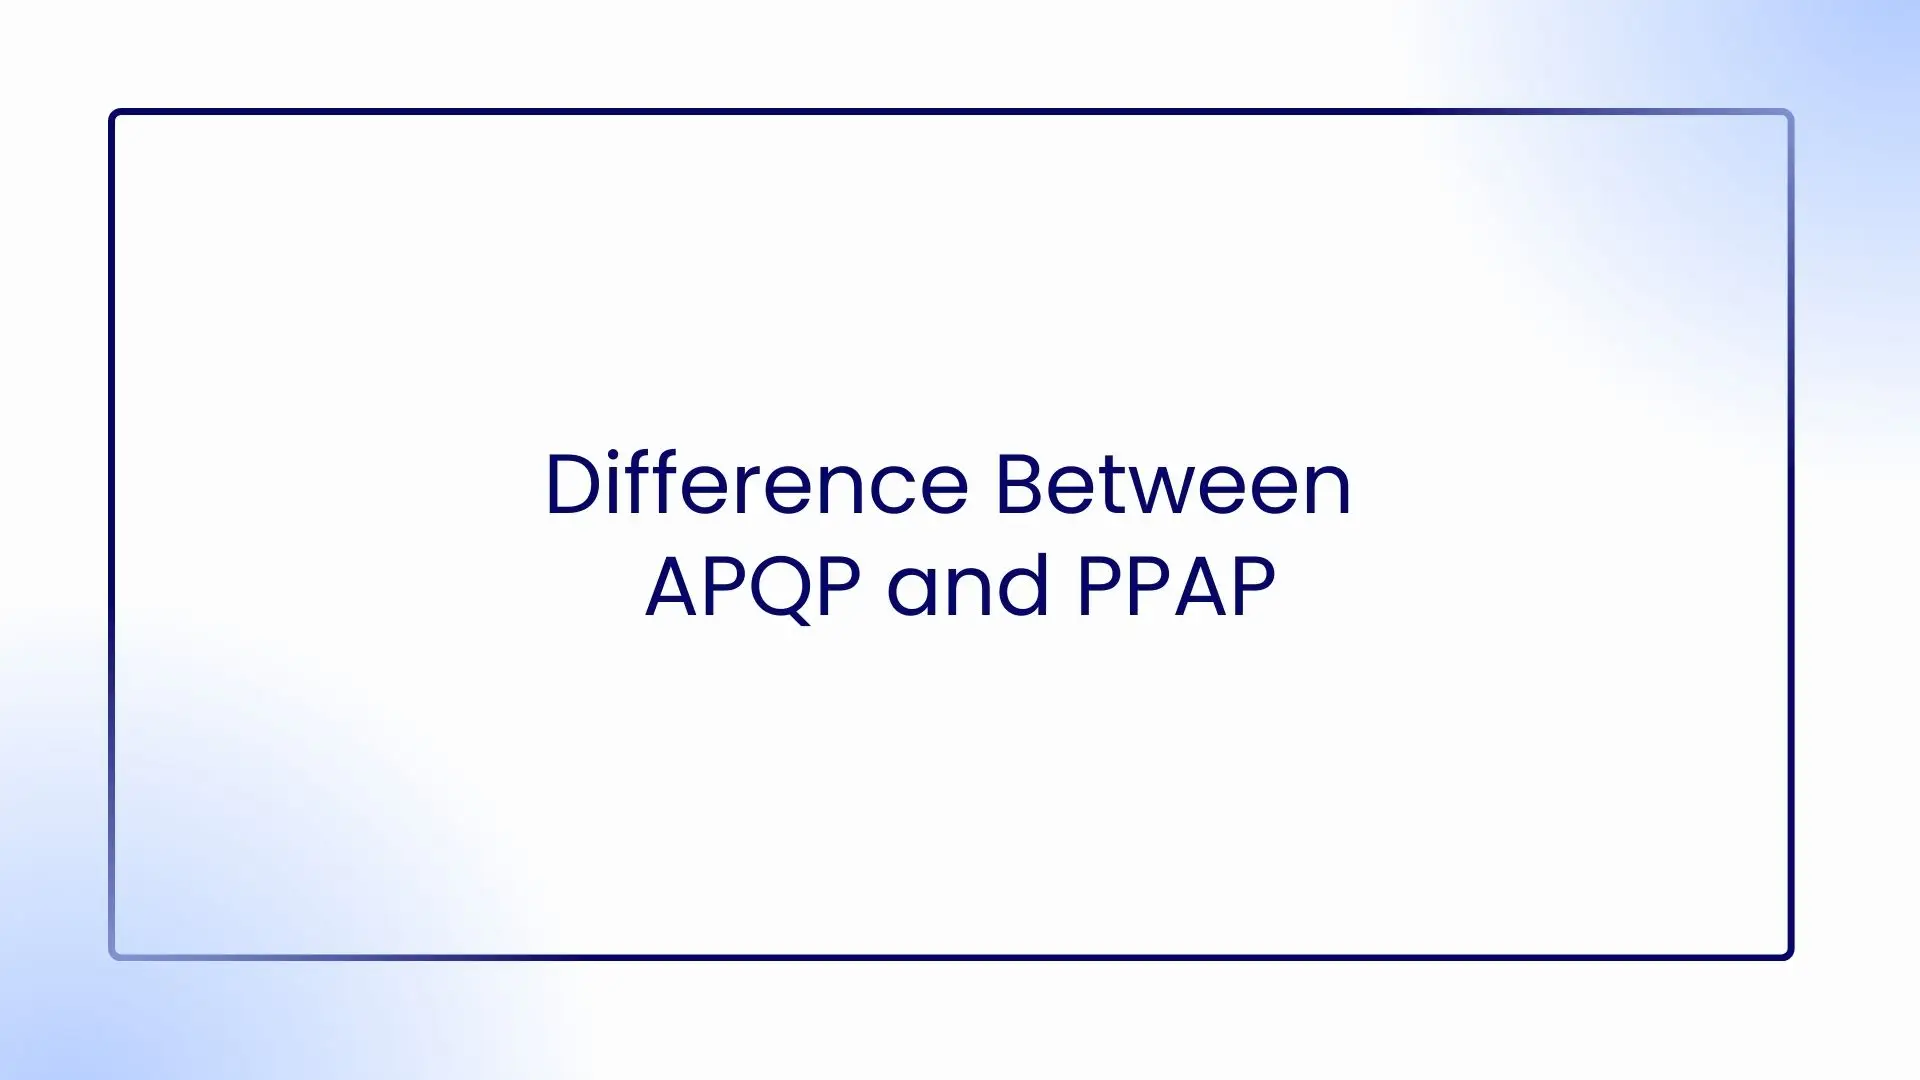 Choosing APQP or PPAP